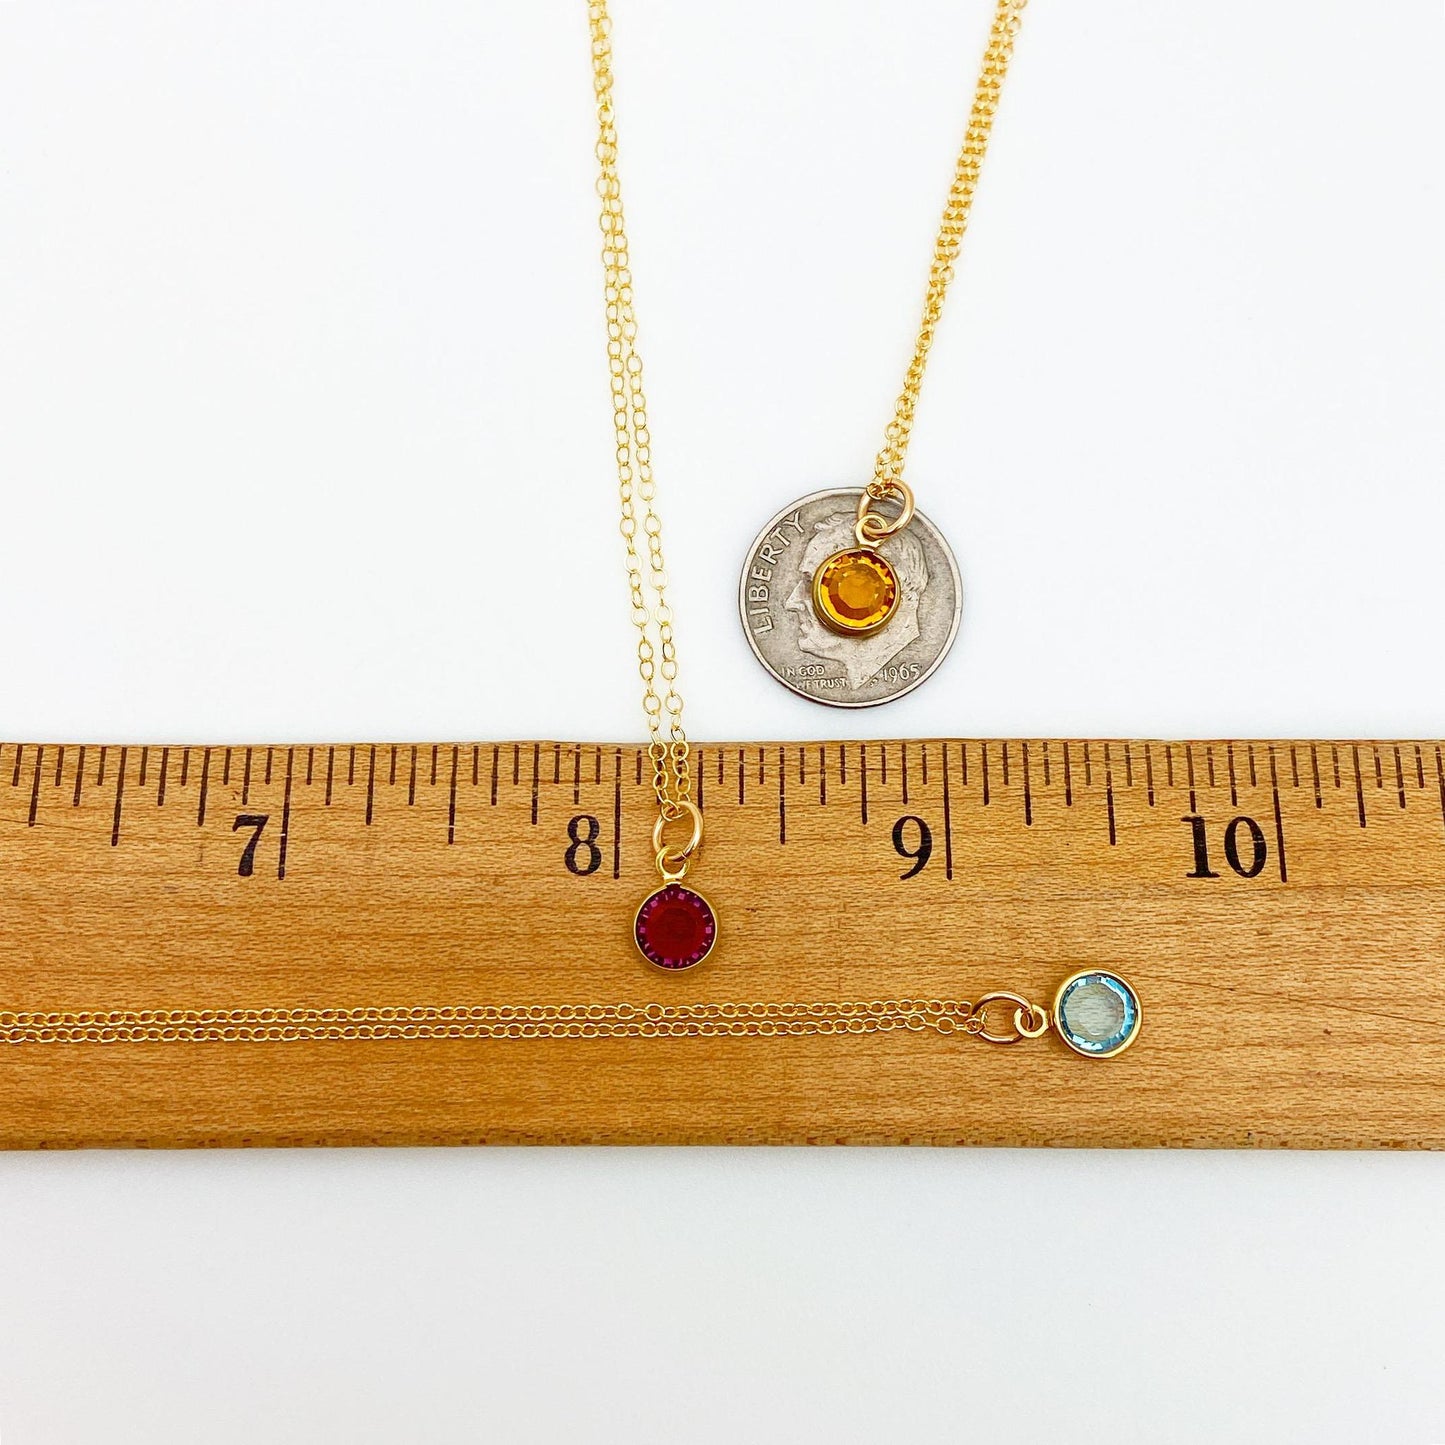 Necklace - Dainty Gem-Tone Crystal Pendant - Amethyst